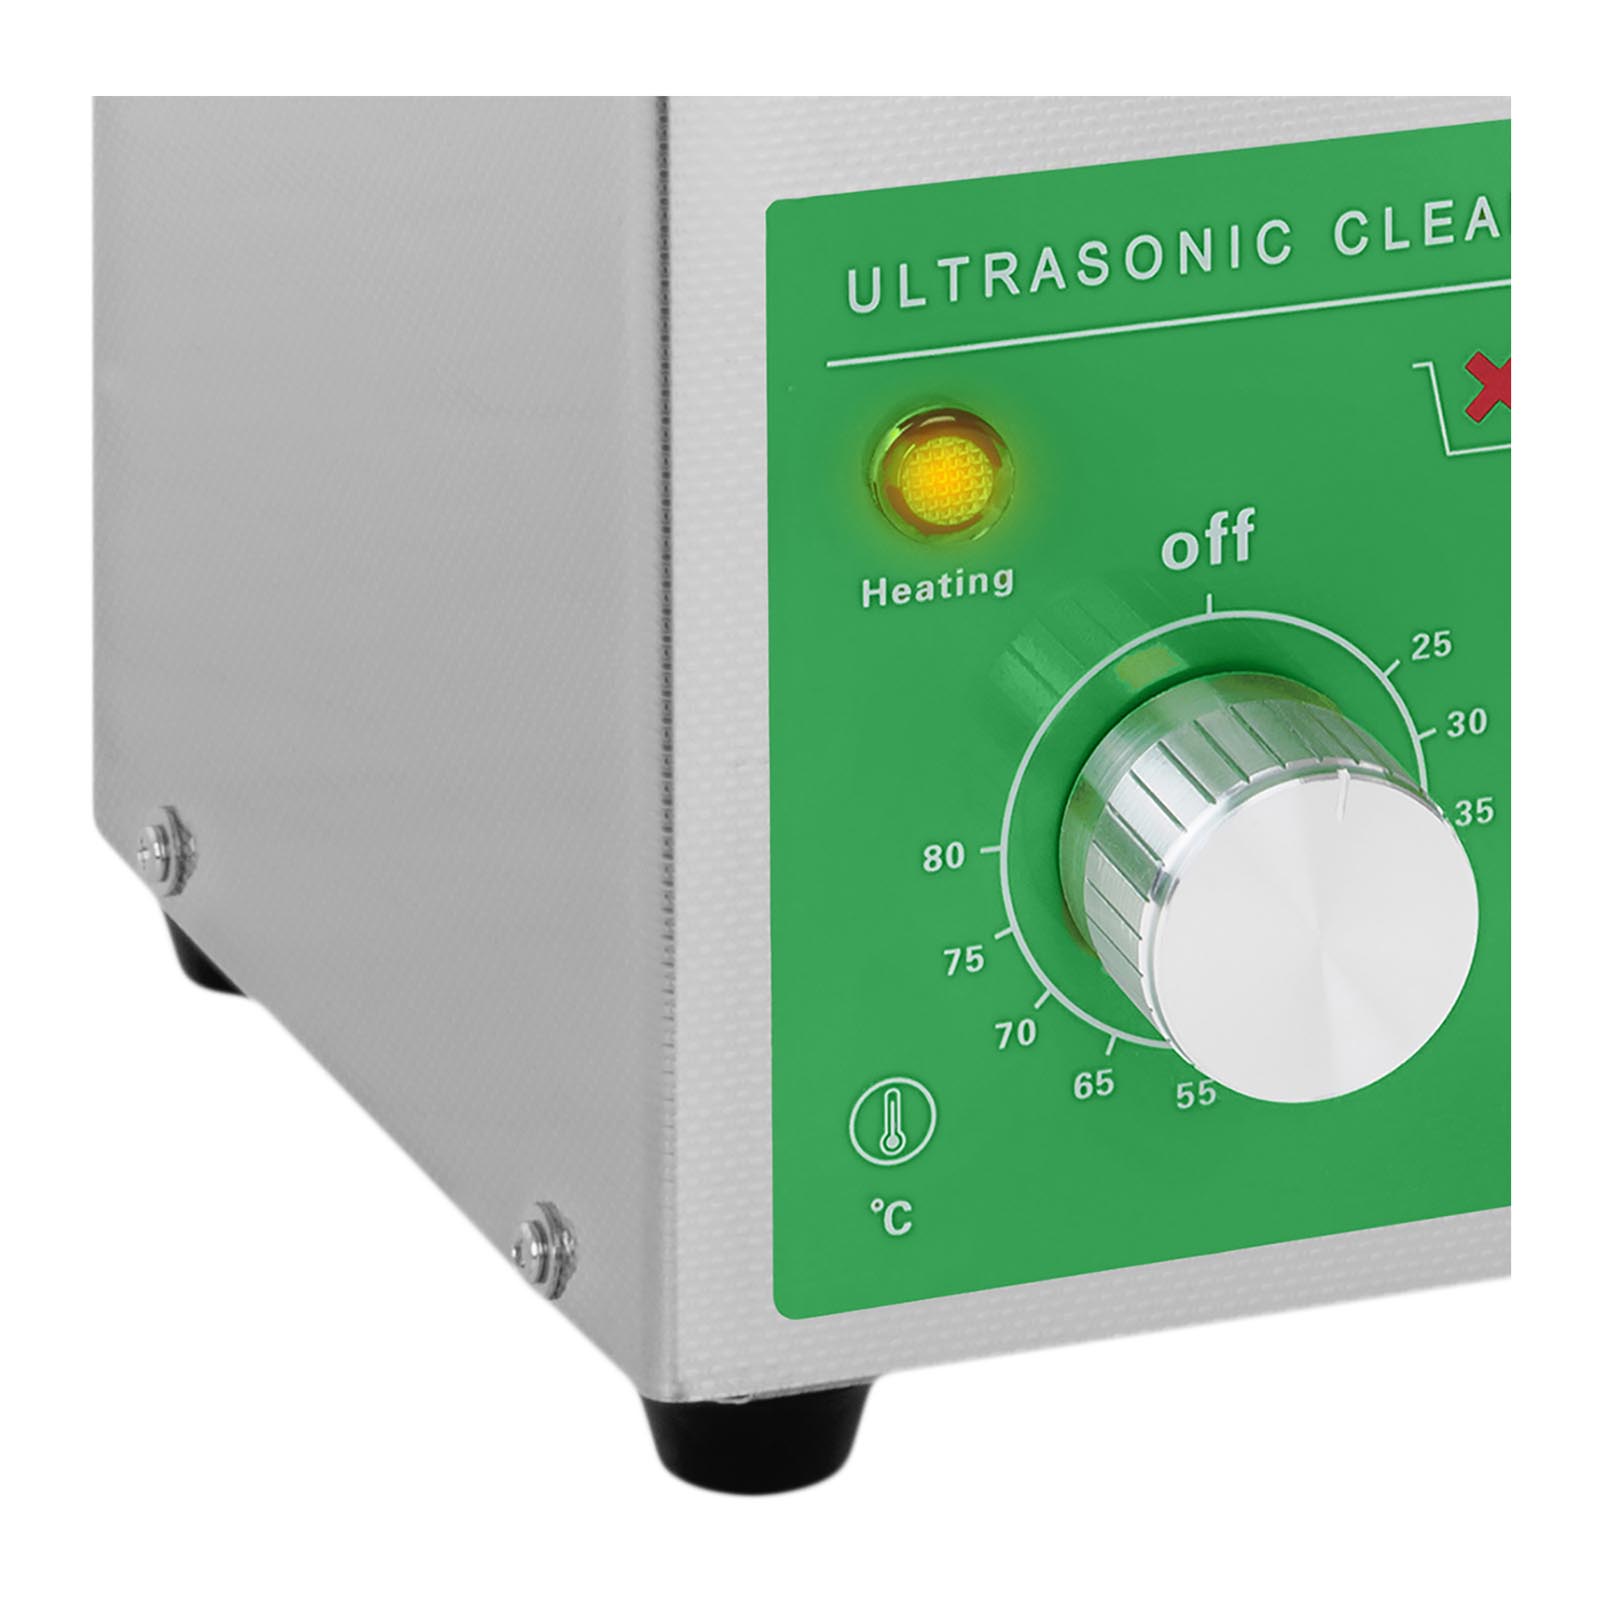 Ultraschallreiniger - 2 Liter - 60 W - Basic Eco